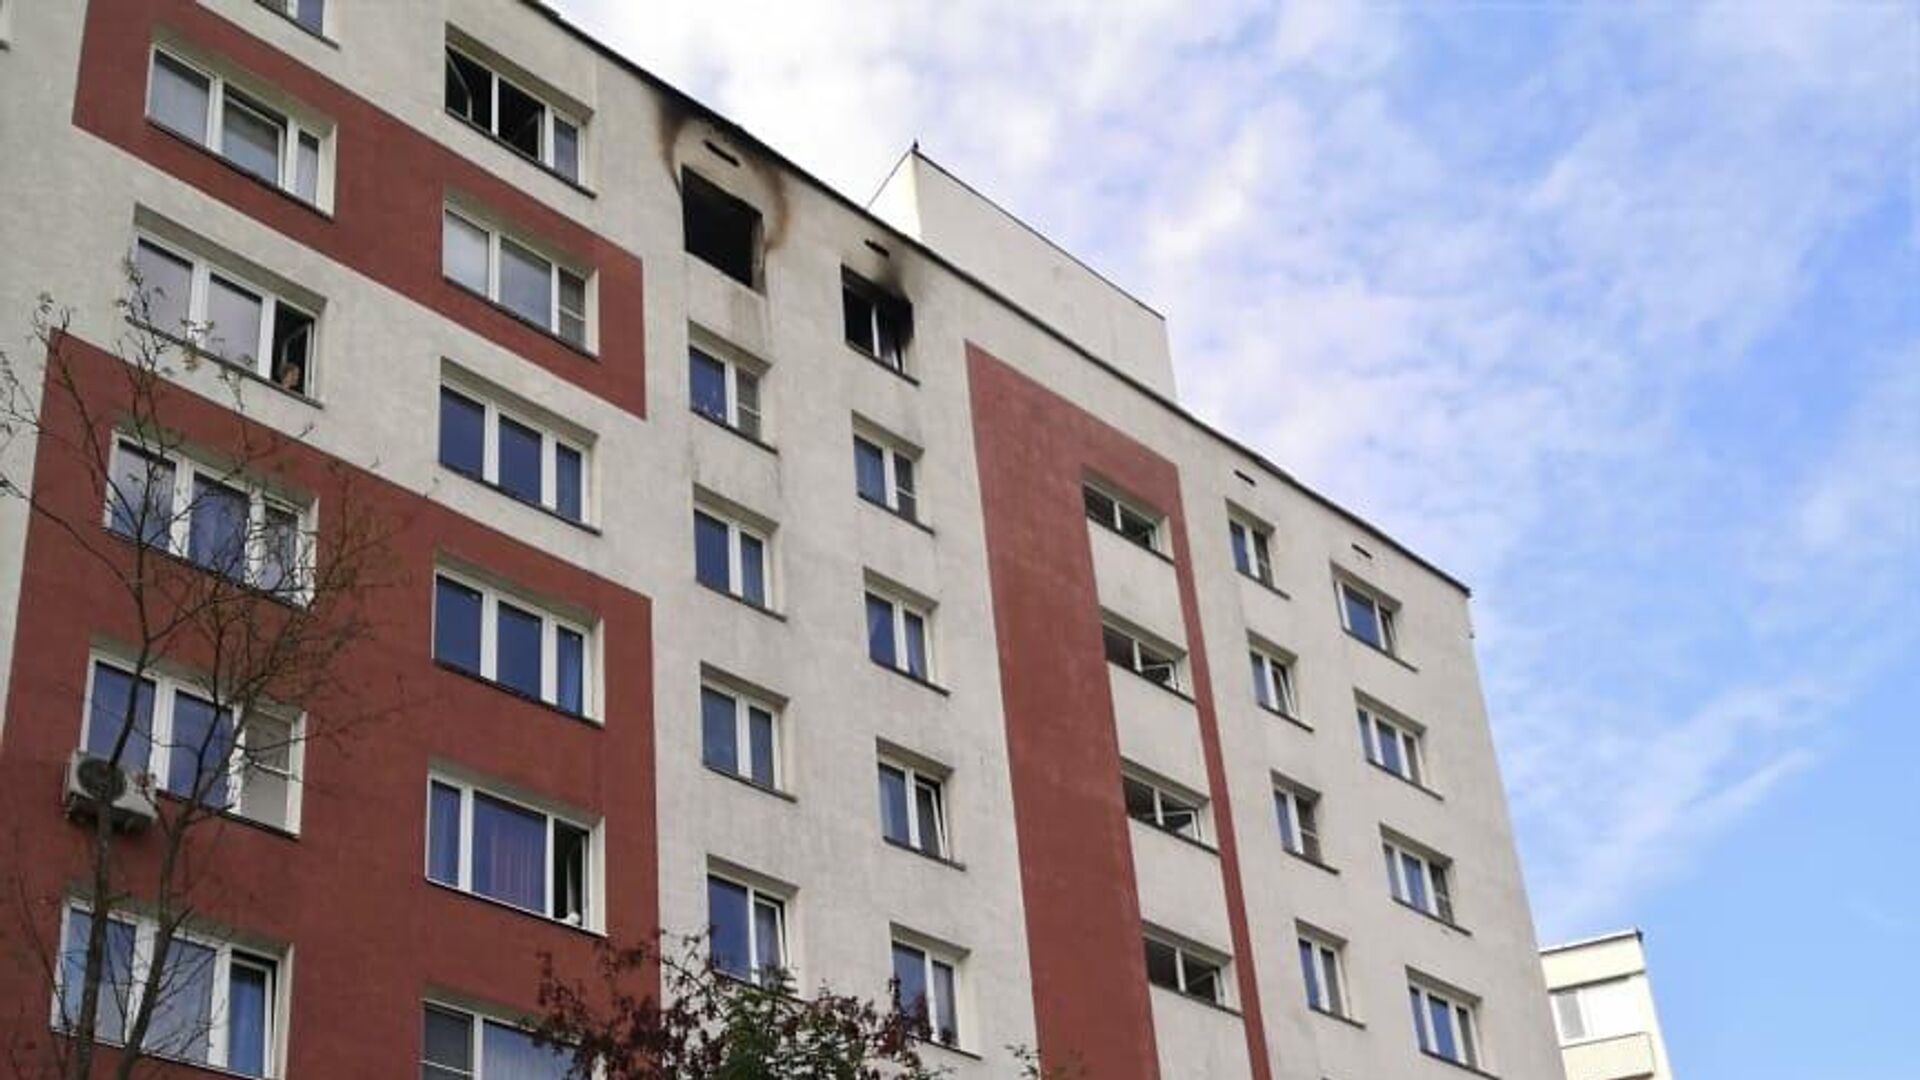 Место пожара в жилой доме в Зеленограде - РИА Новости, 1920, 07.09.2020